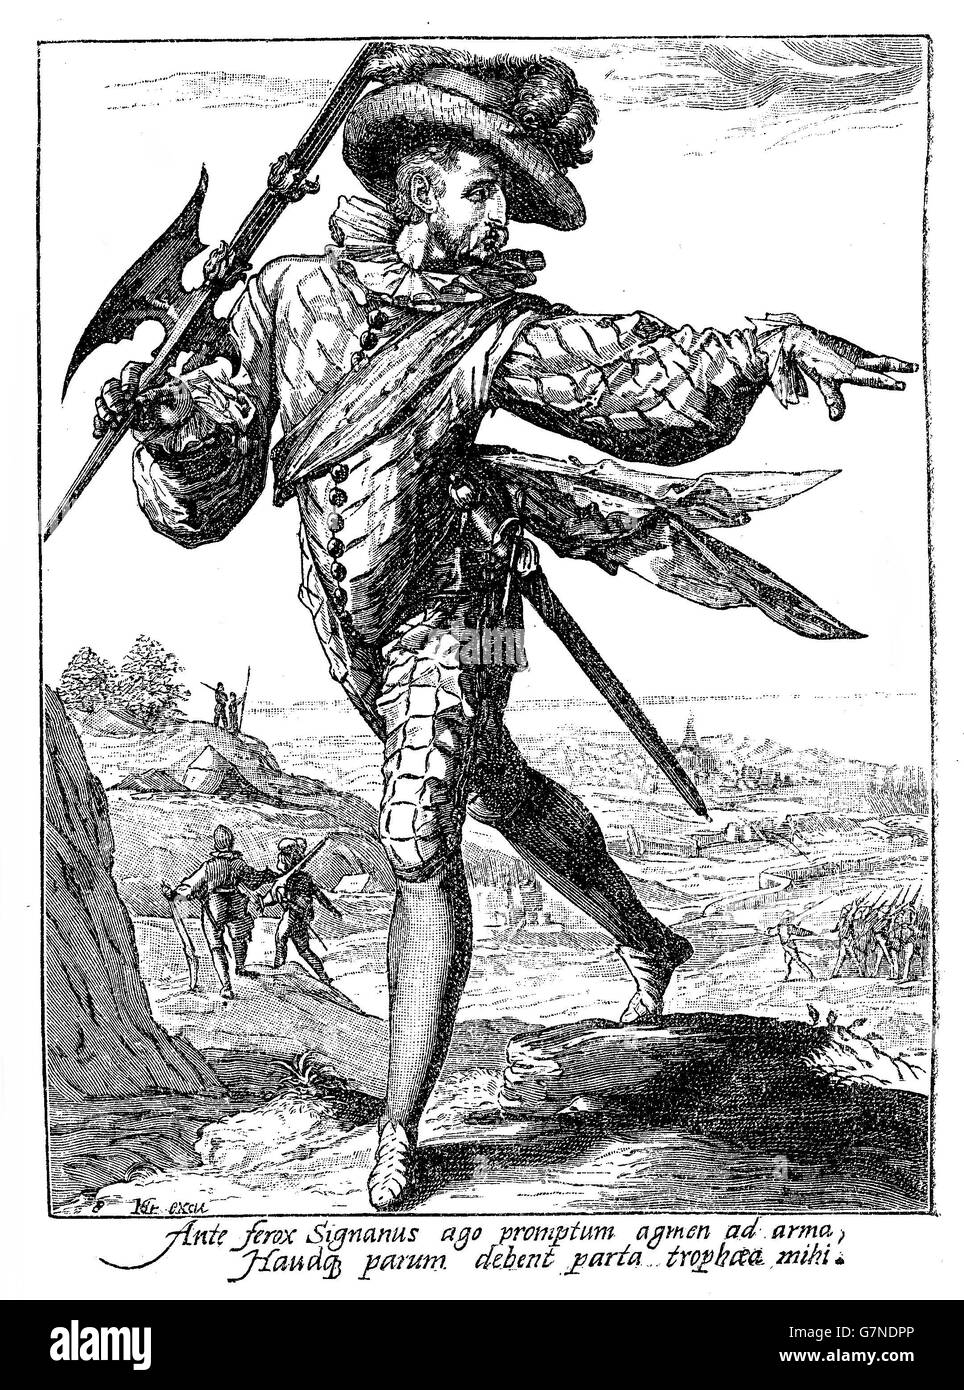 1600, illustrazione raffigurante una guardia con lancia e spada di Rodolfo II di Asburgo imperatore del Sacro Romano Impero, Re di Boemia e Arciduca d'Austria Foto Stock